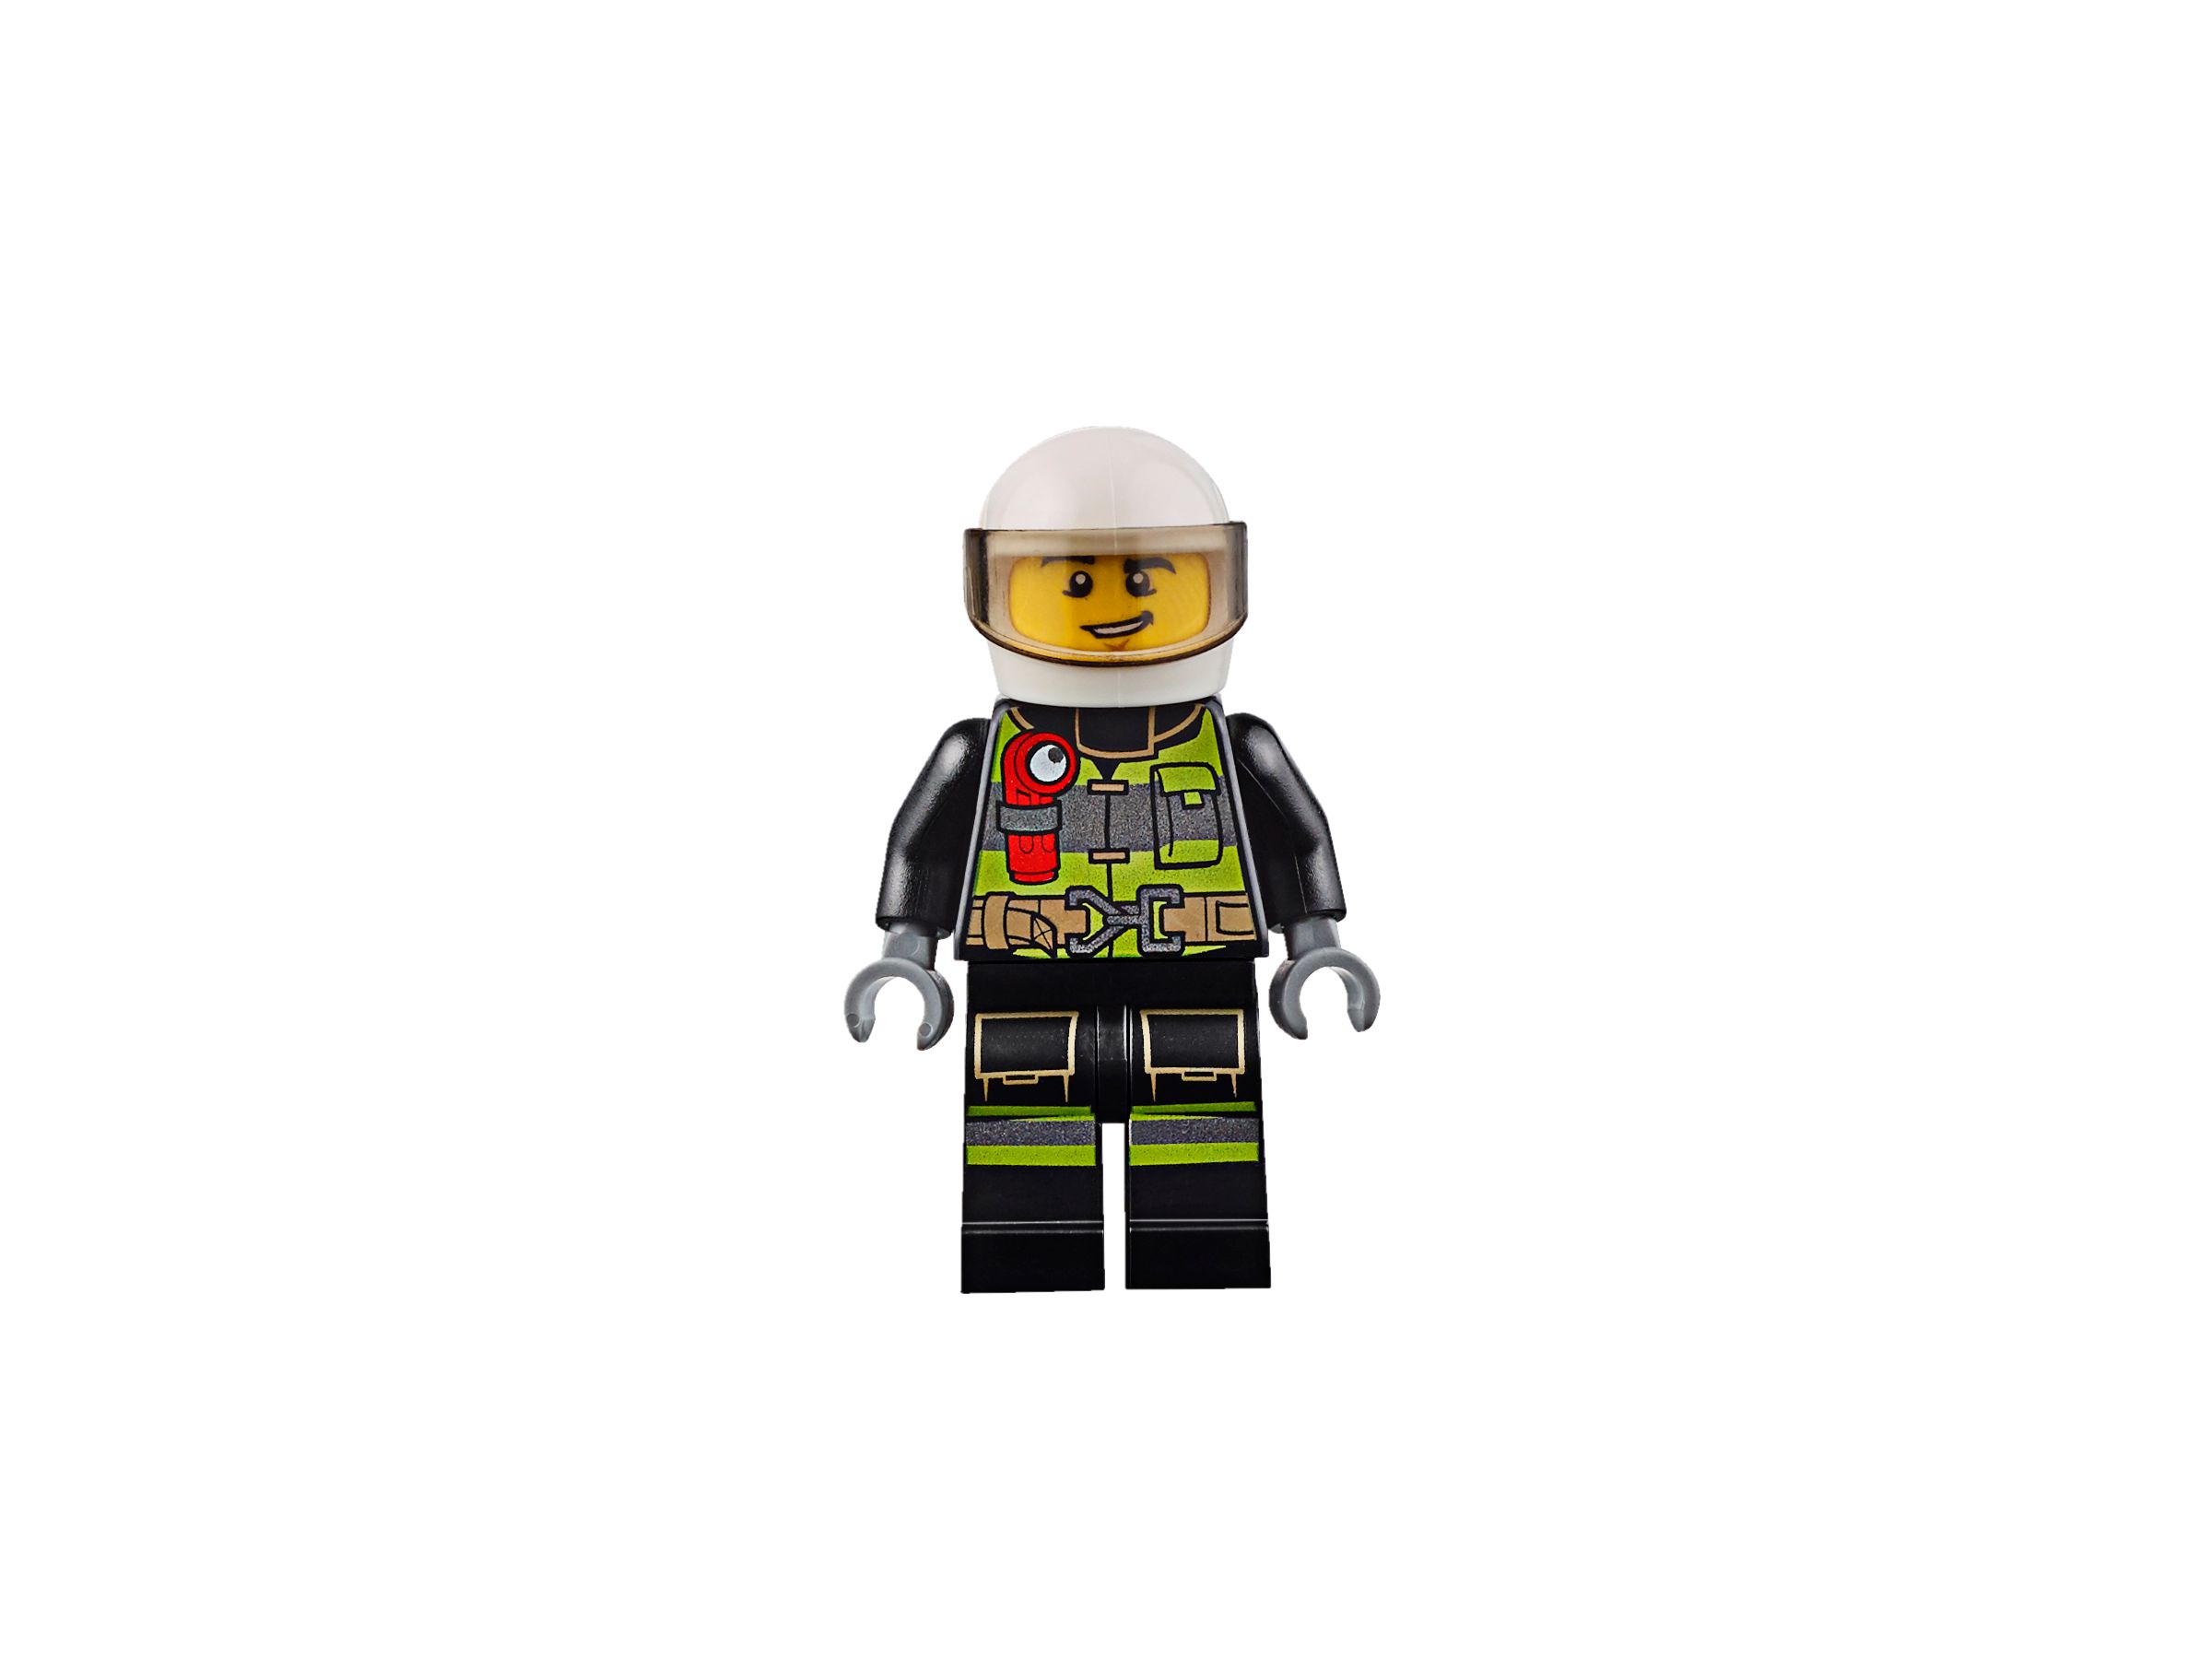 LEGO City 60108 Feuerwehr-Löscheinheit LEGO_60108_alt7.jpg